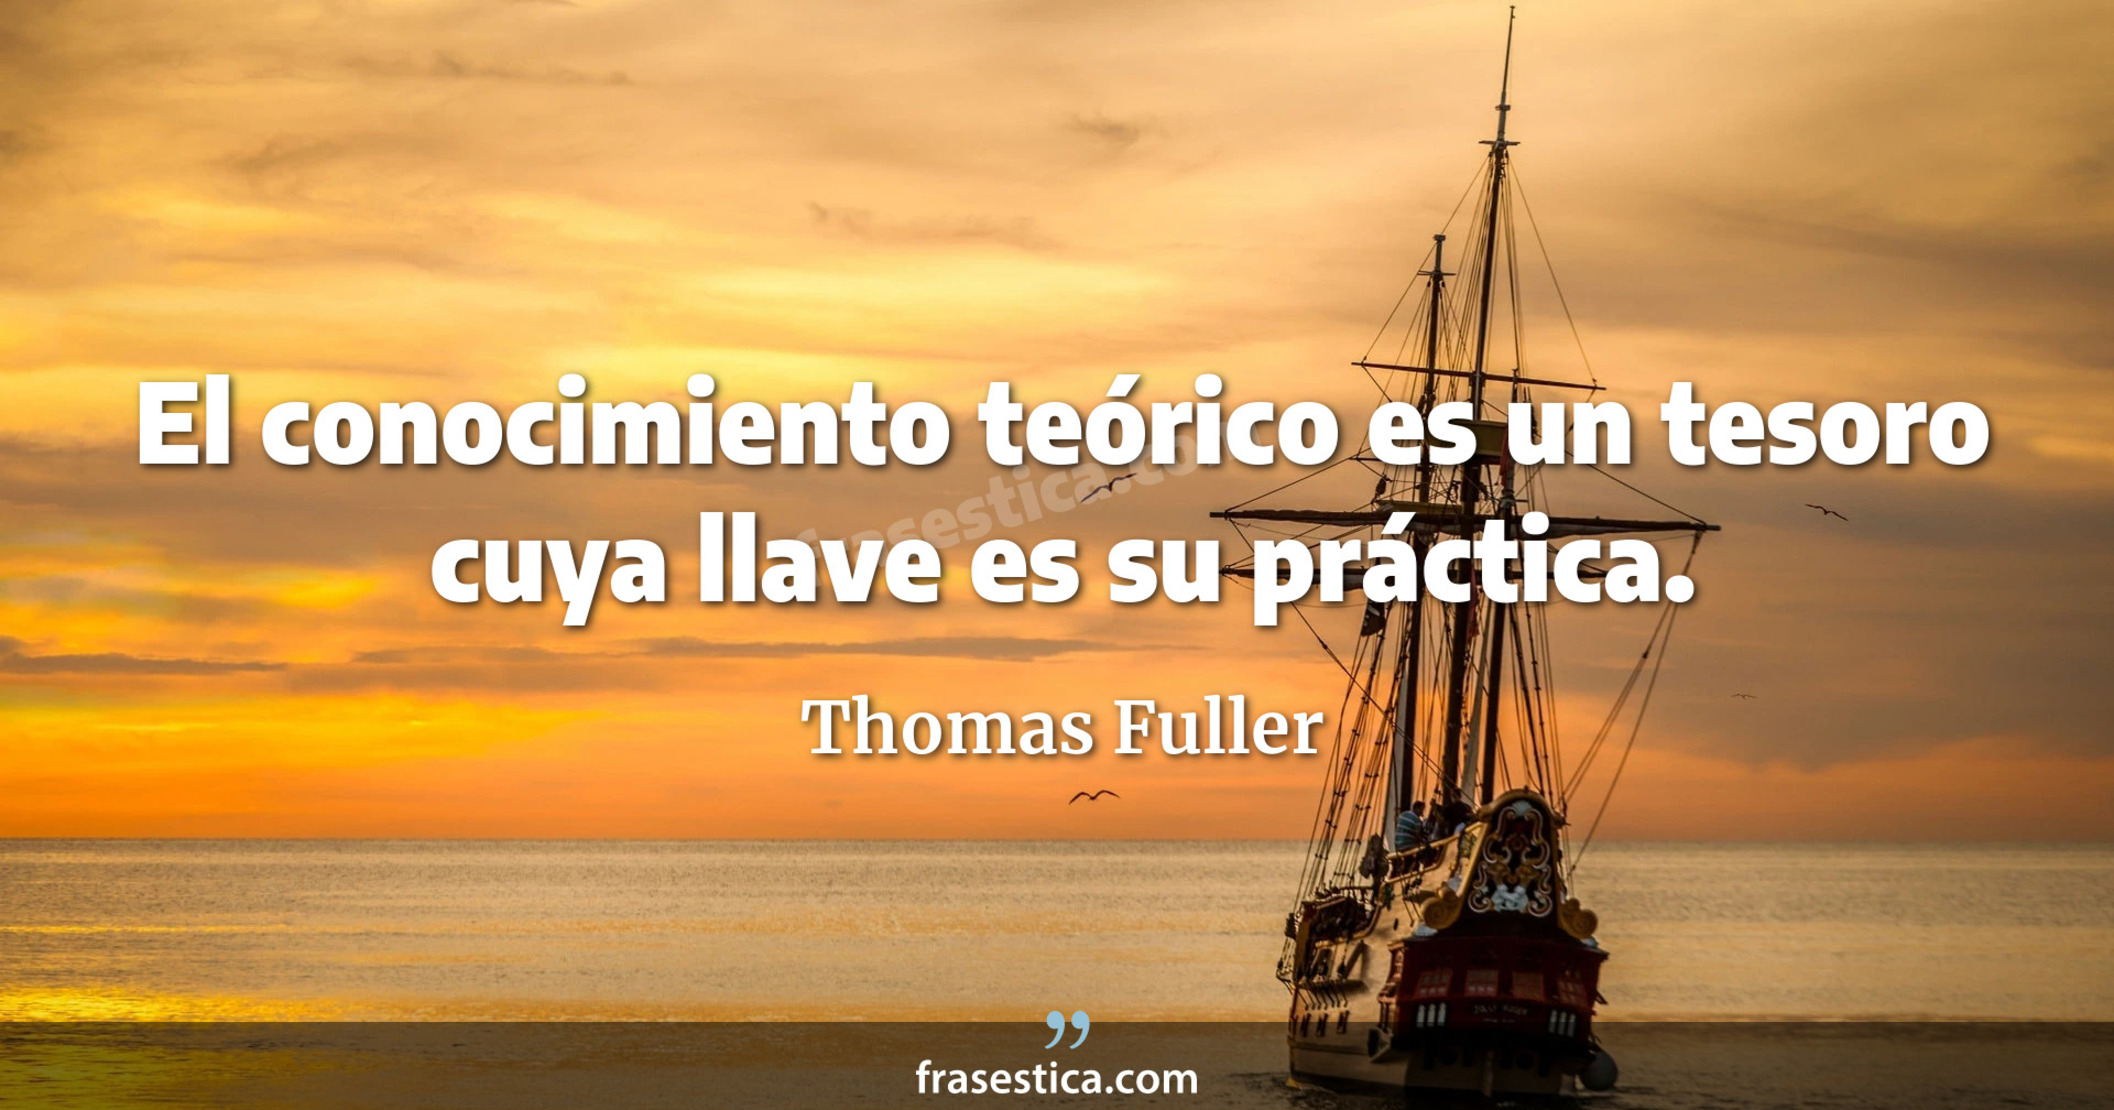 El conocimiento teórico es un tesoro cuya llave es su práctica. - Thomas Fuller